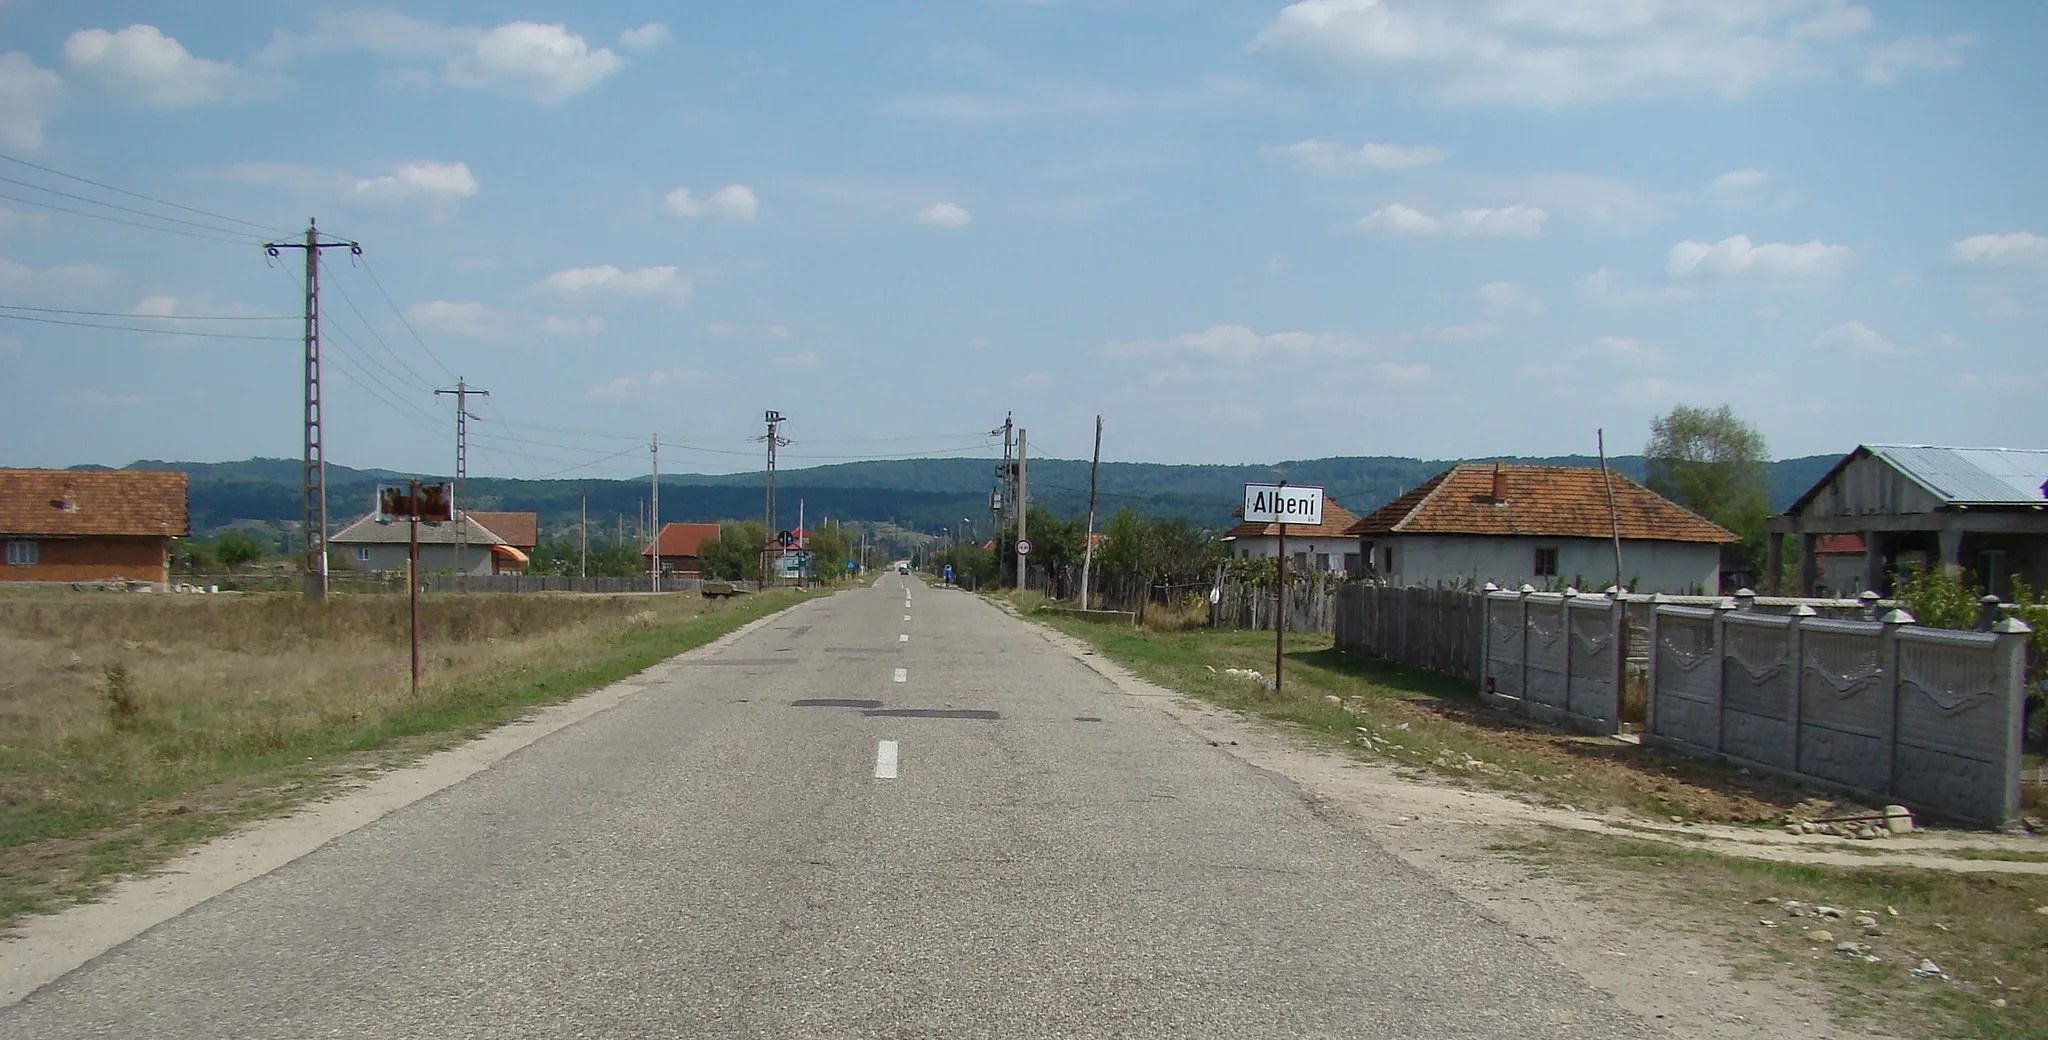 Photo showing: Albeni, Gorj county, Romania